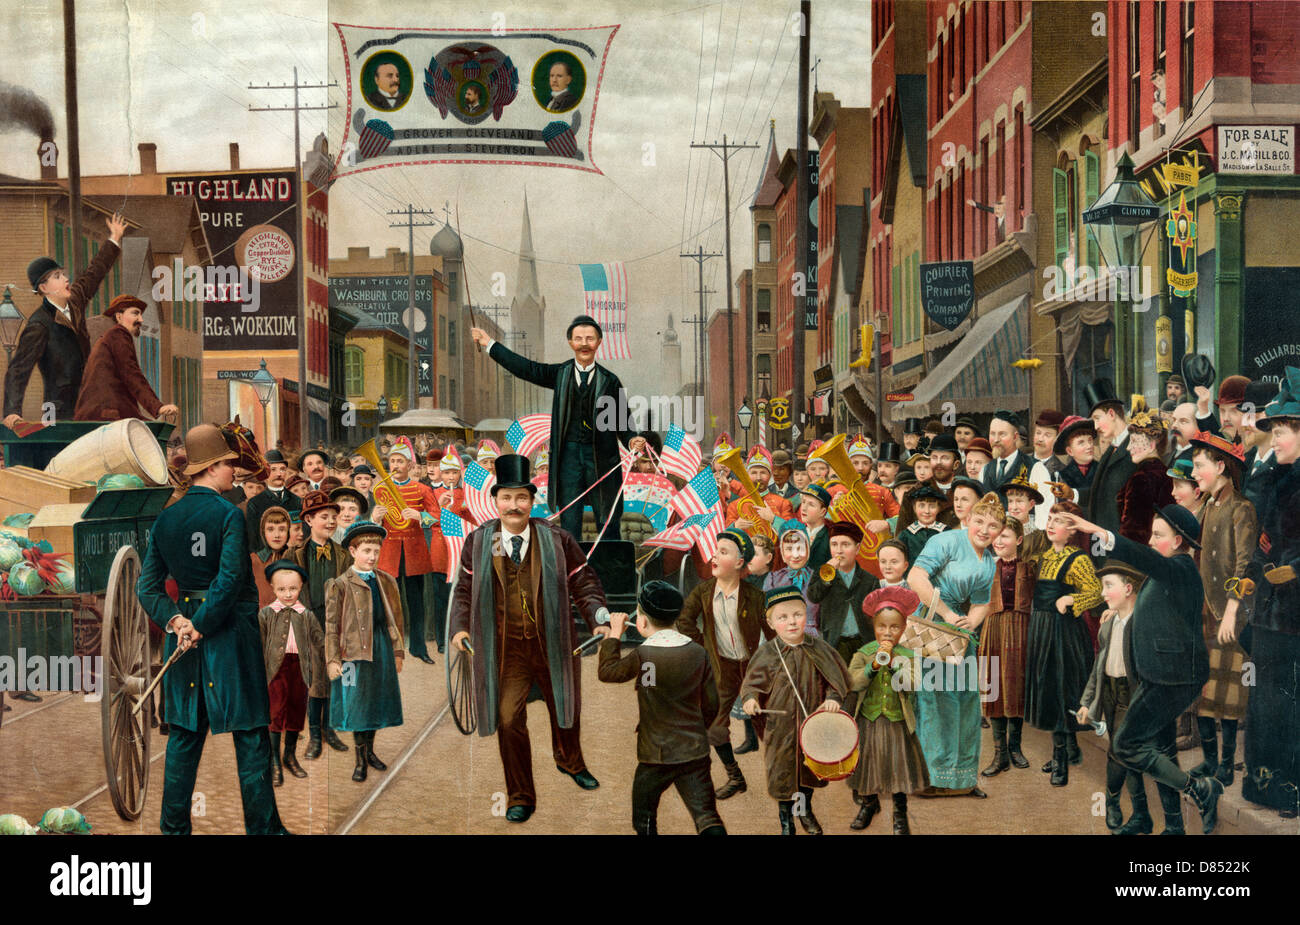 Die verlorene Wette - Parade mit Banner zeigen Kopf und Schulter Portraits von Grover Cleveland, Adlai und Gouverneur John Peter Altgeld. 1893 Stockfoto